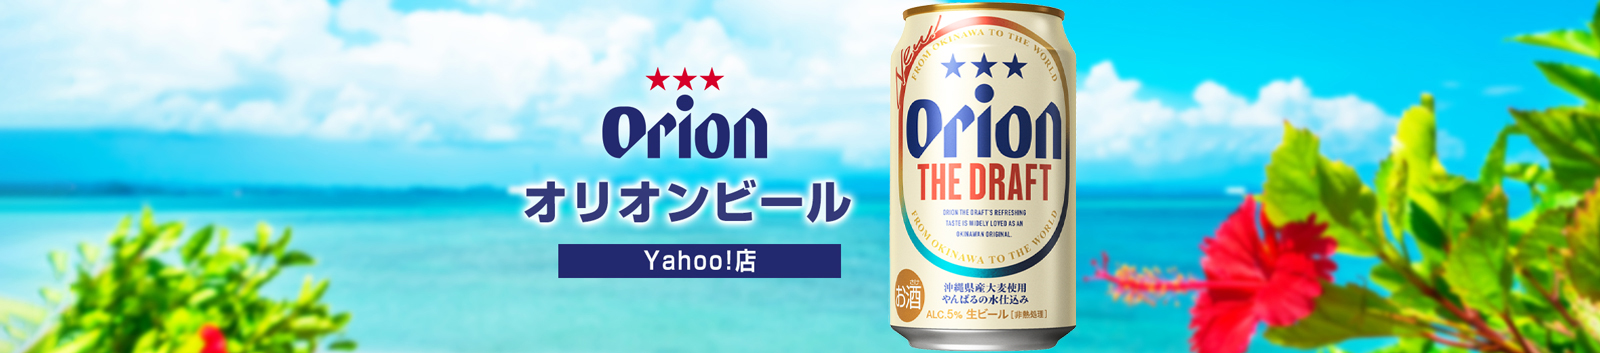 オリオンビール Yahoo!店 ヘッダー画像